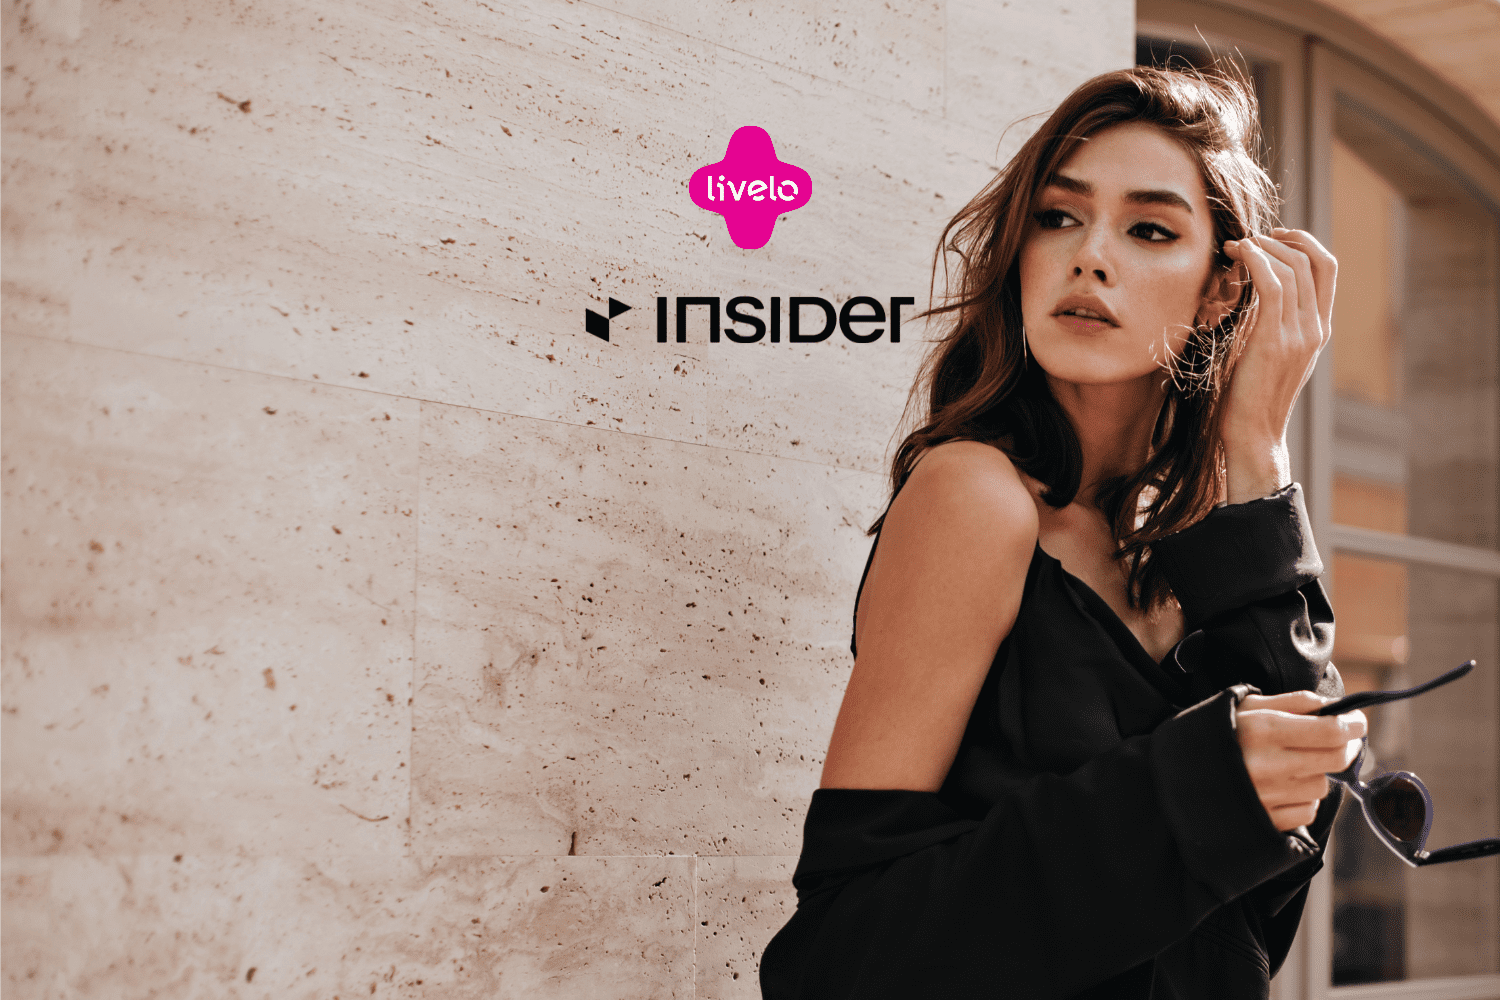 Mulher posando ao ar livre com um look sofisticado, acompanhada dos logos da Livelo e Insider. Ganhe 14 pontos Livelo com a Insider Store.